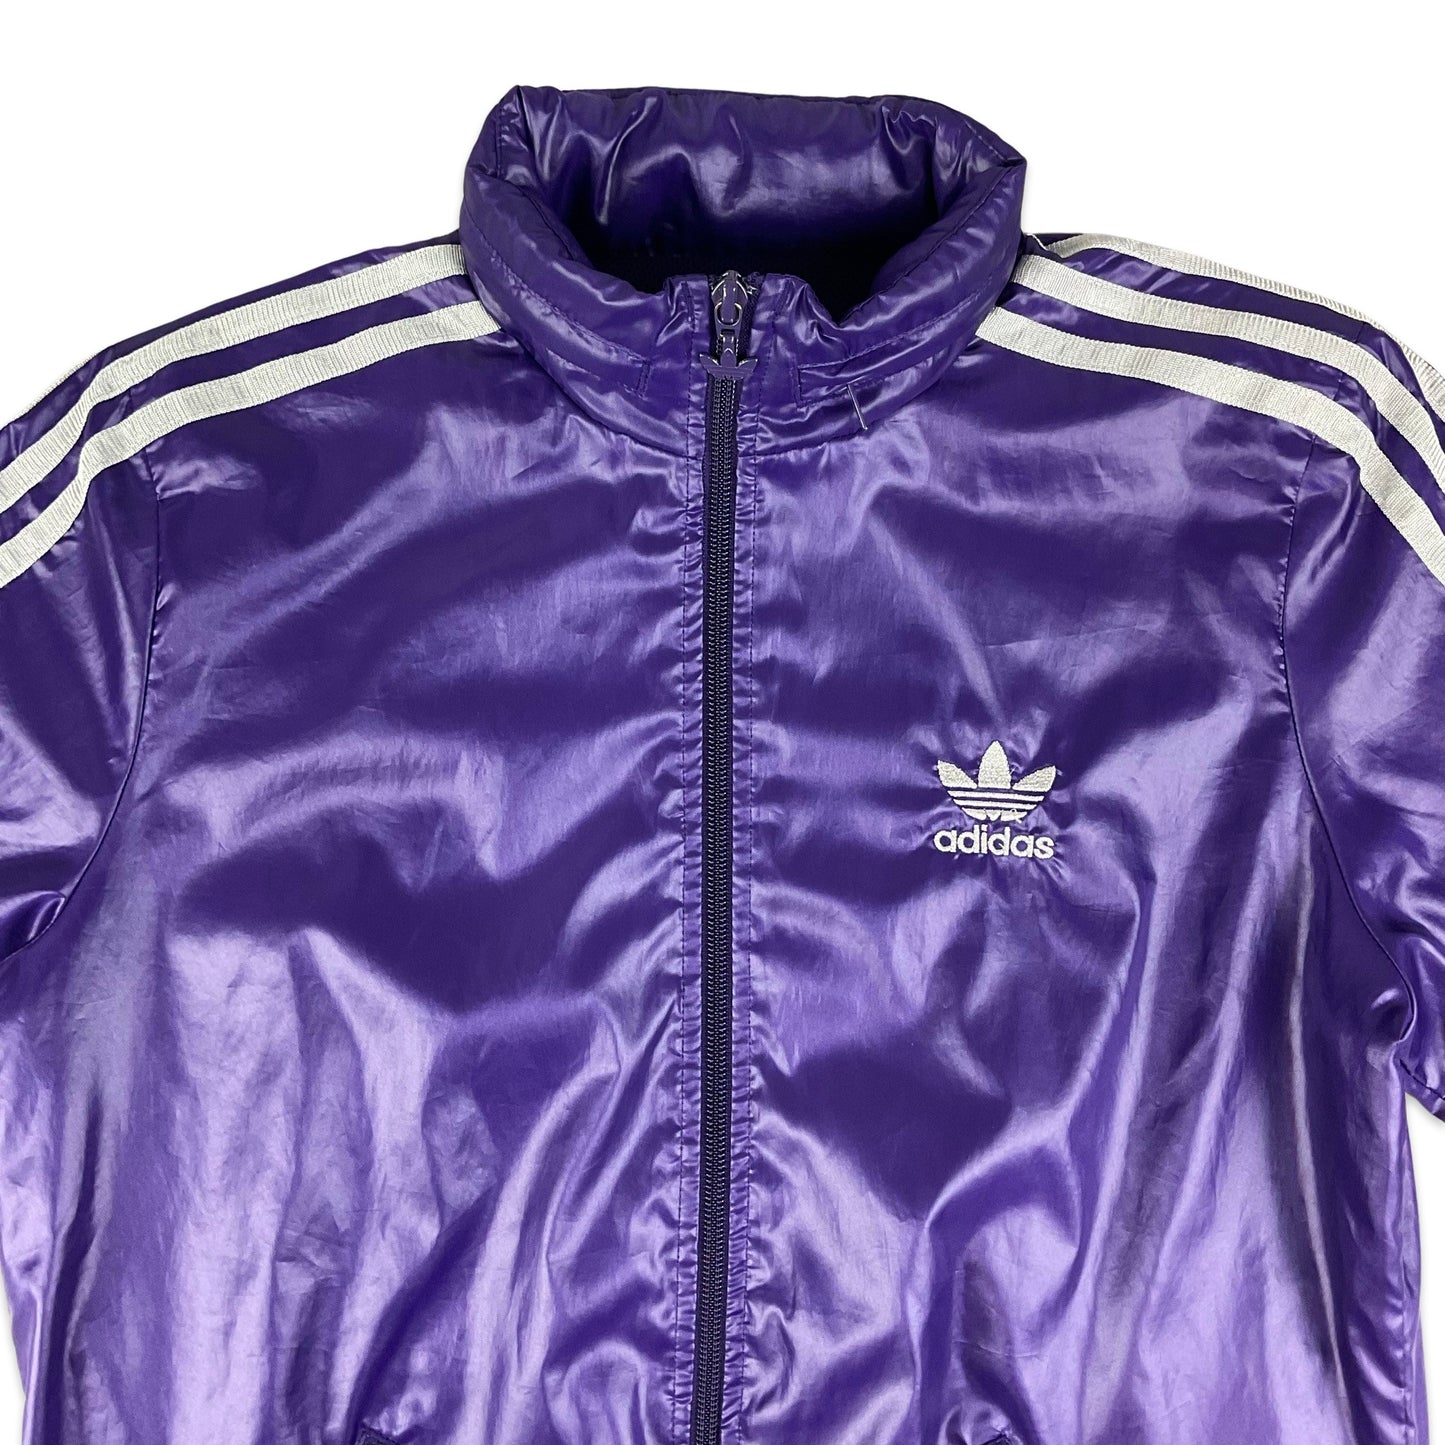 Vintage Adidas Purple & Silver Track Jacket 10 12